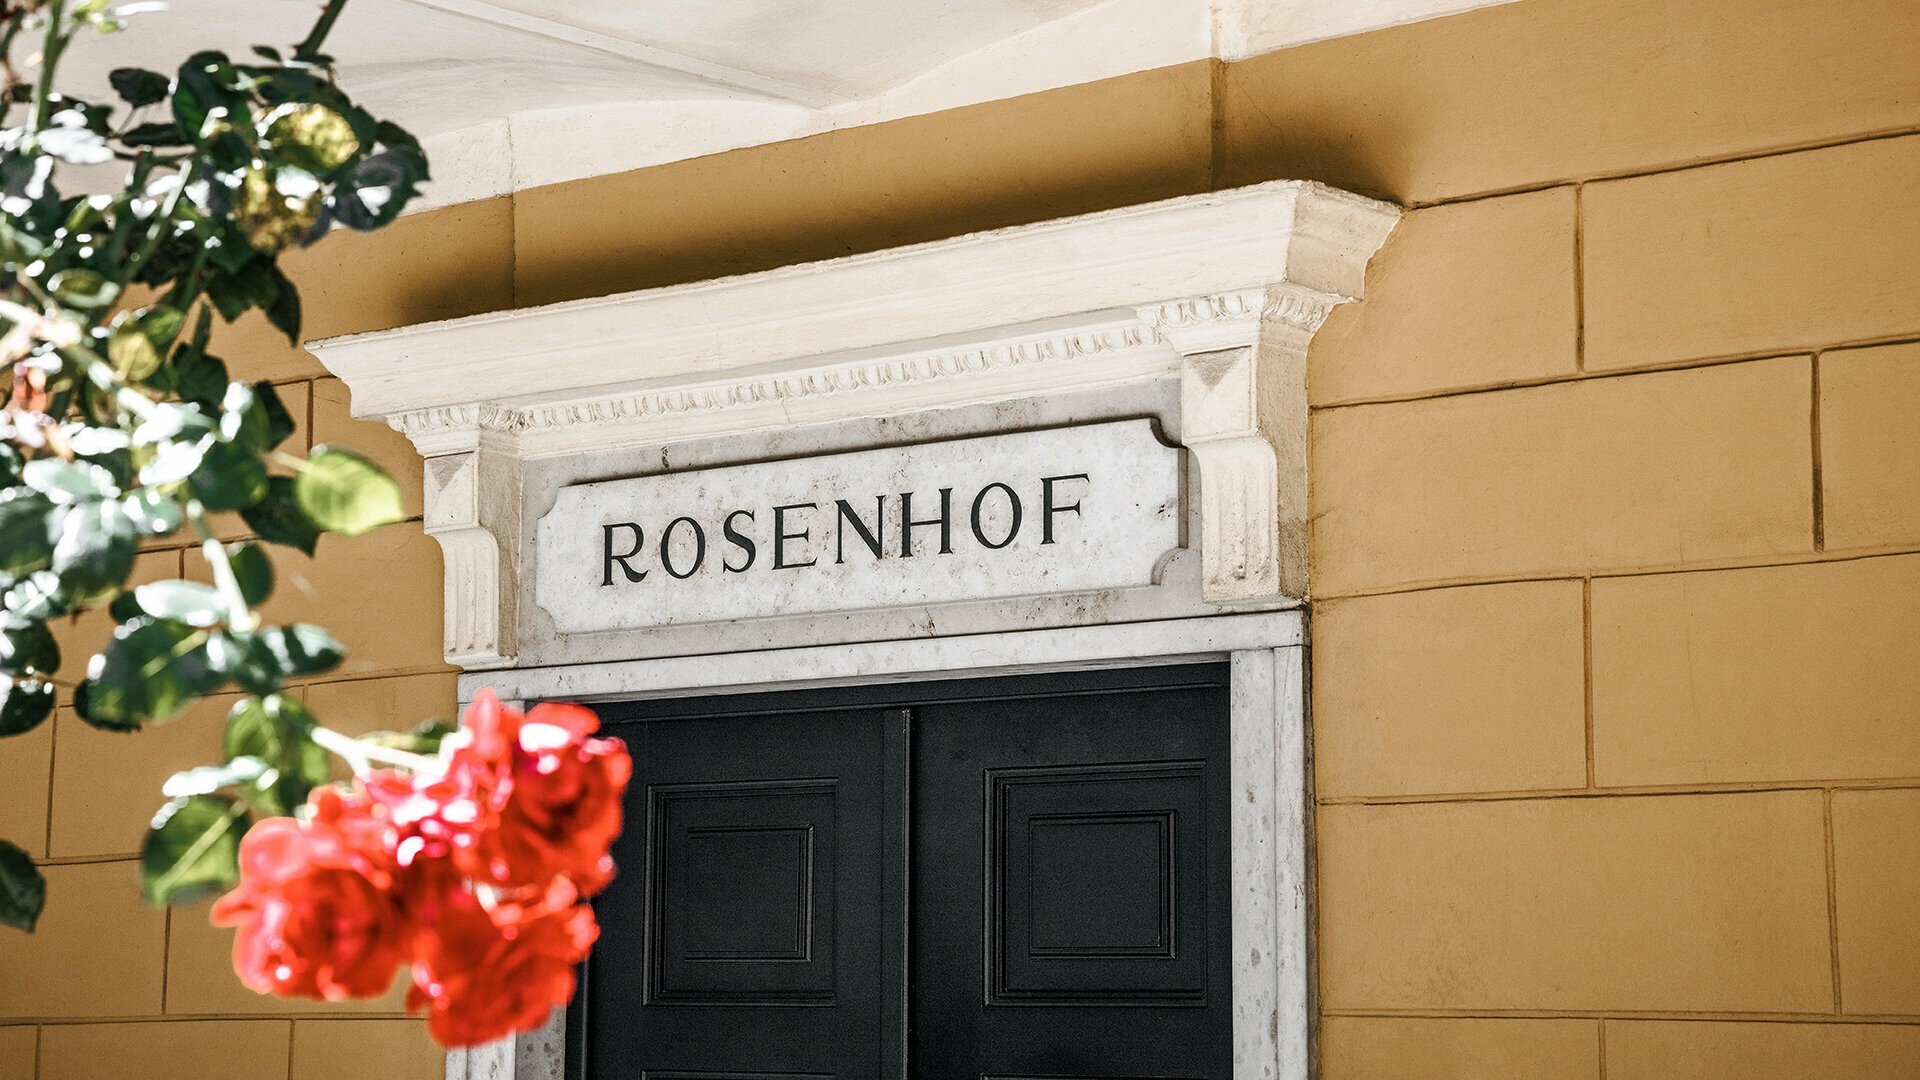 Außenansicht des Architektur-Büros Pfaffenbichler mit der Aufschrift "Rosenhof"